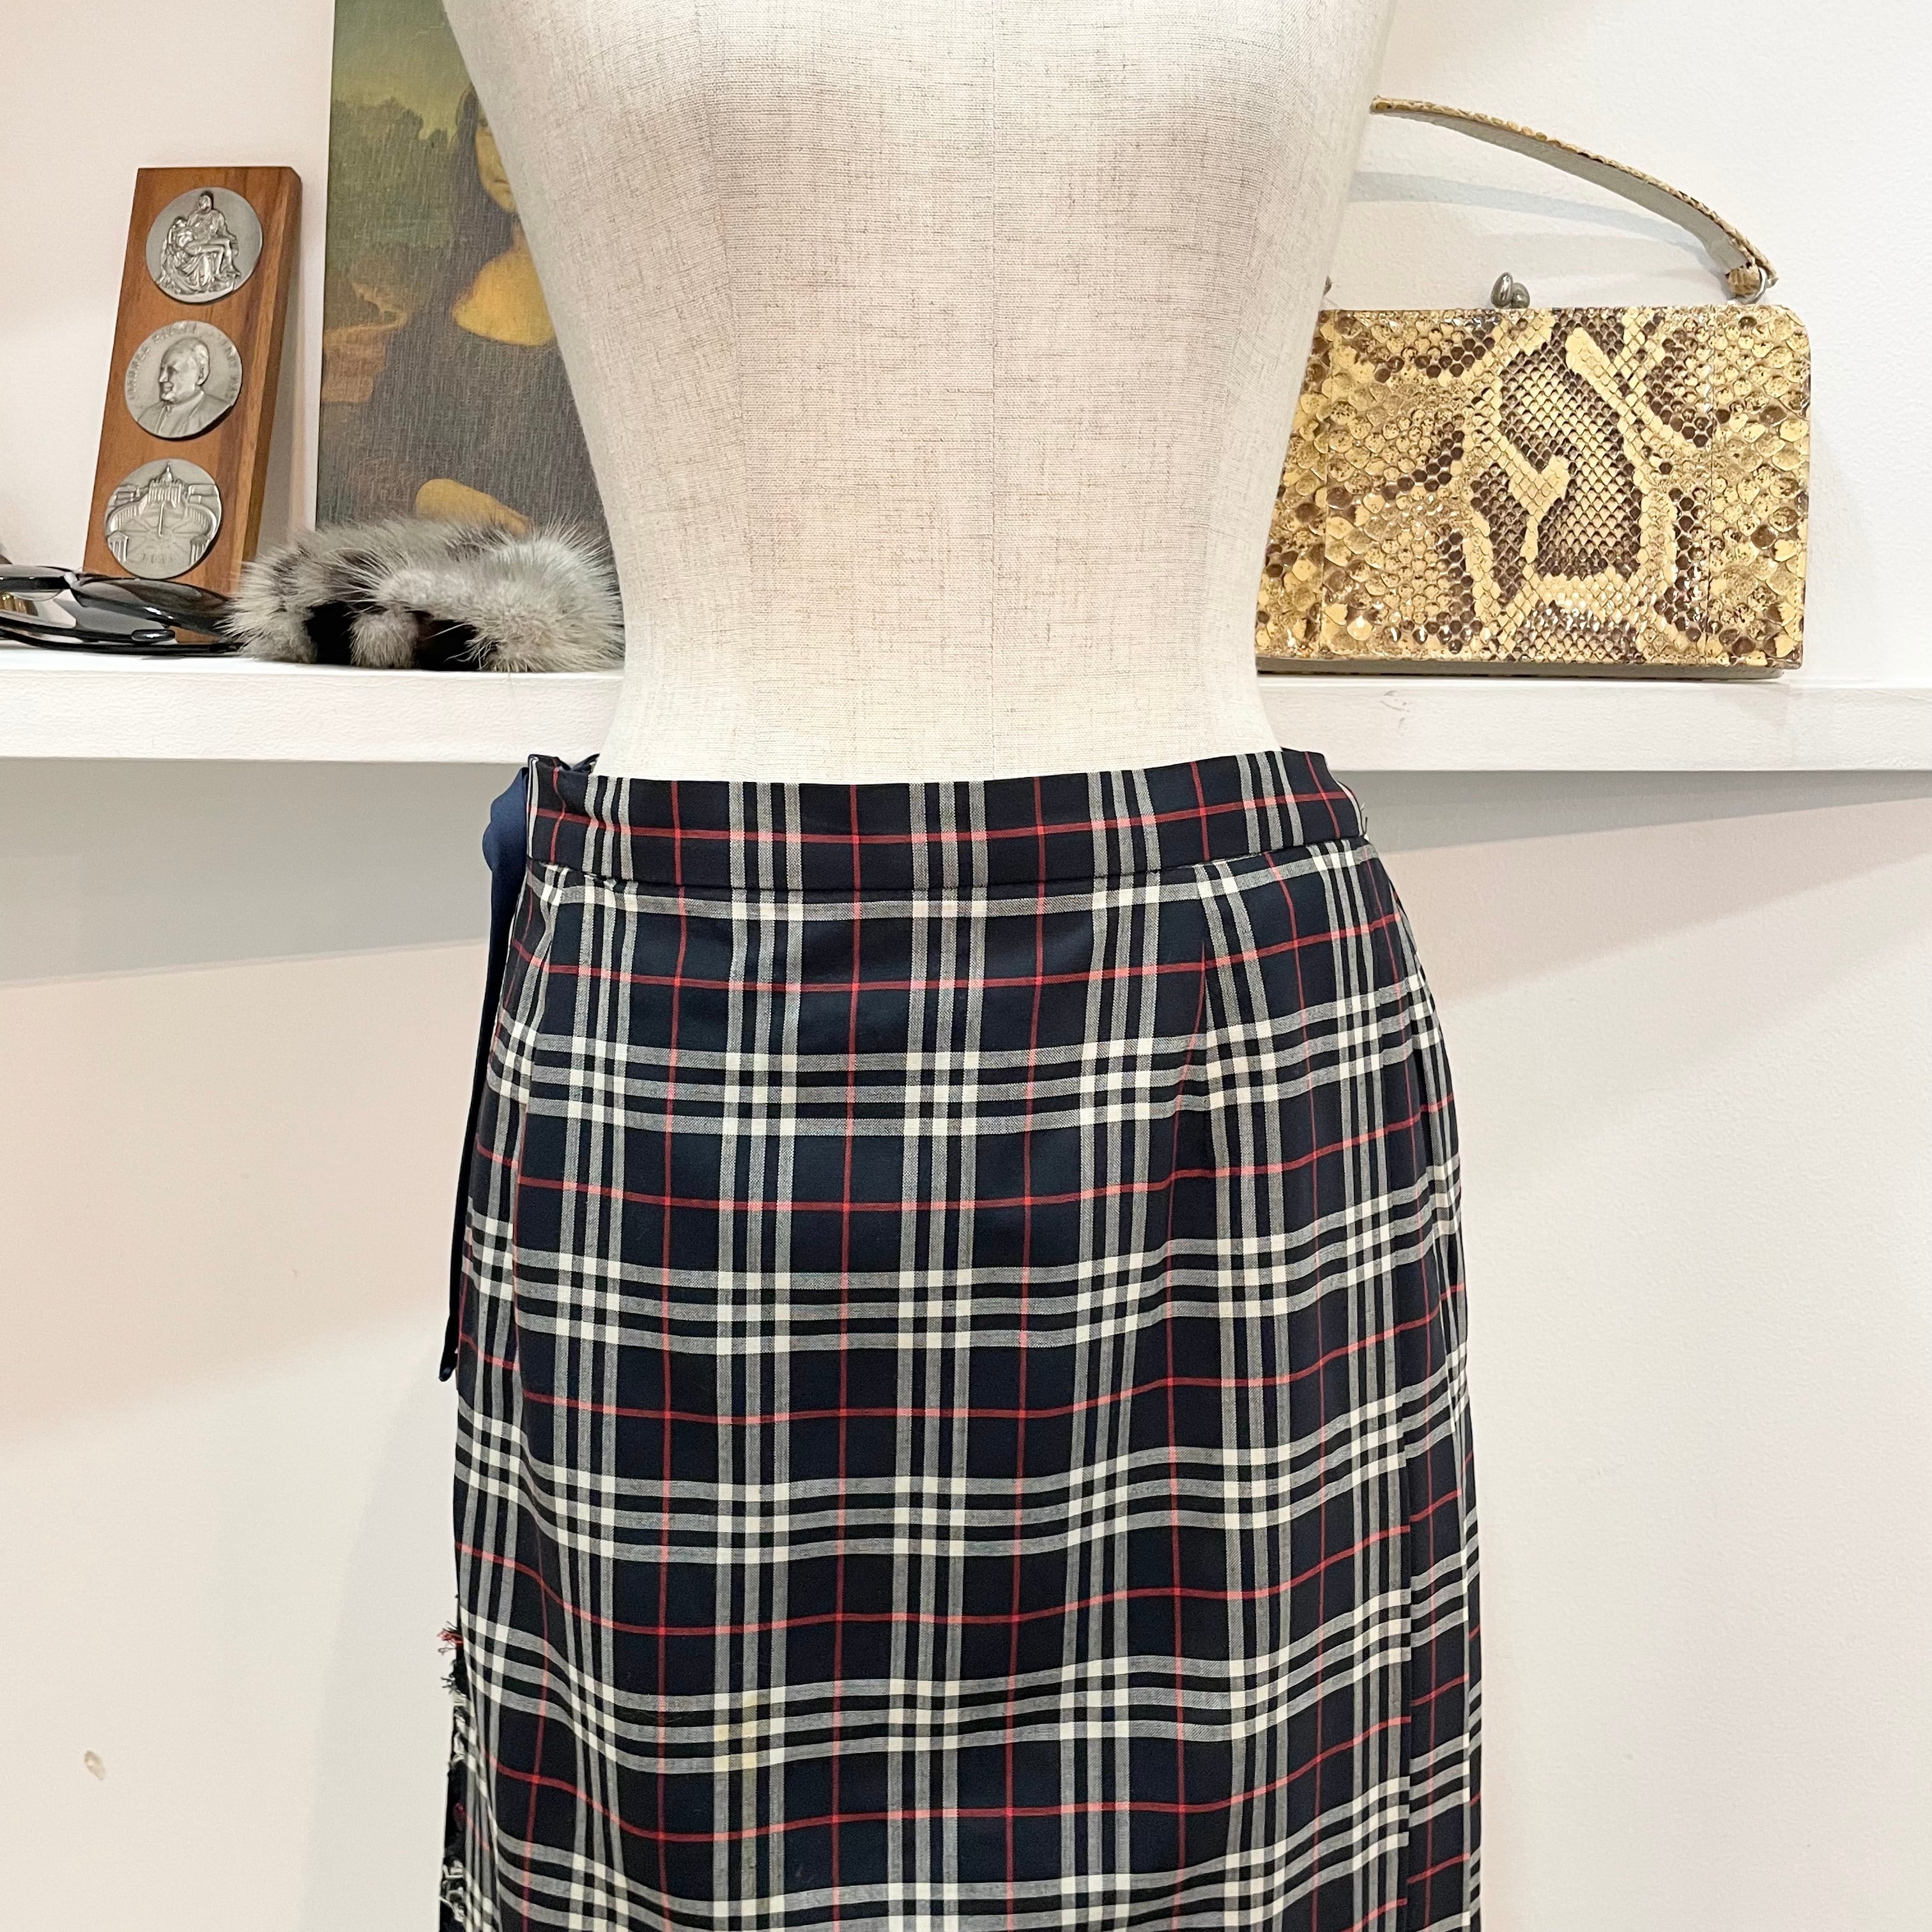 burberry/skirt/check/pleats/long/navy/white/red/バーバリー